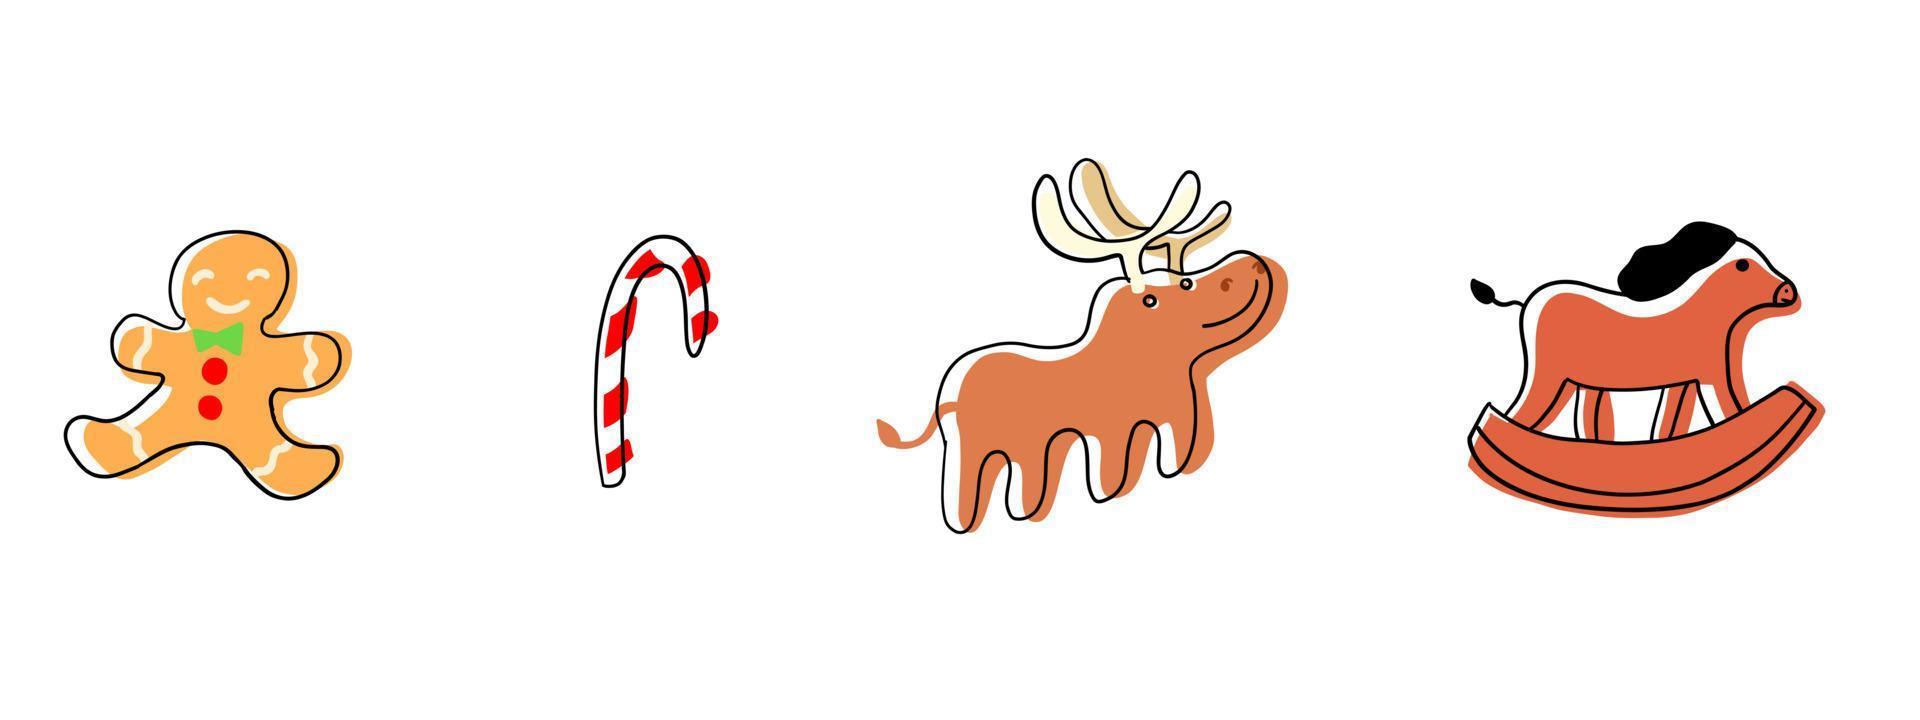 conjunto de feliz navidad. elementos vectoriales en estilo plano de dibujos animados aislados sobre fondo blanco. vector